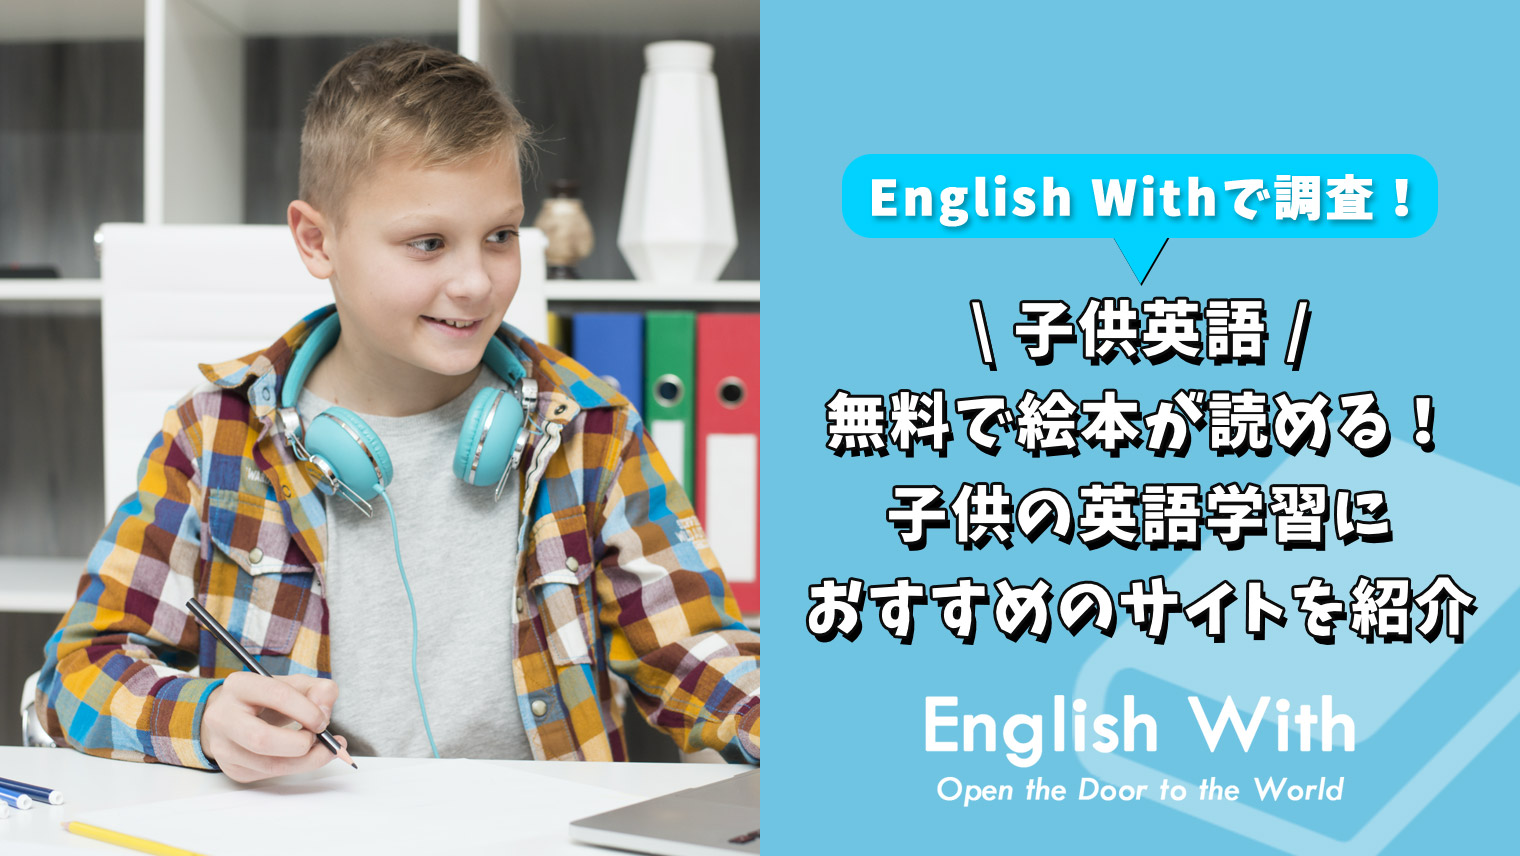 無料で絵本が読める 子供の英語学習におすすめのサイトを紹介 おすすめ英会話 英語学習の比較 ランキング English With